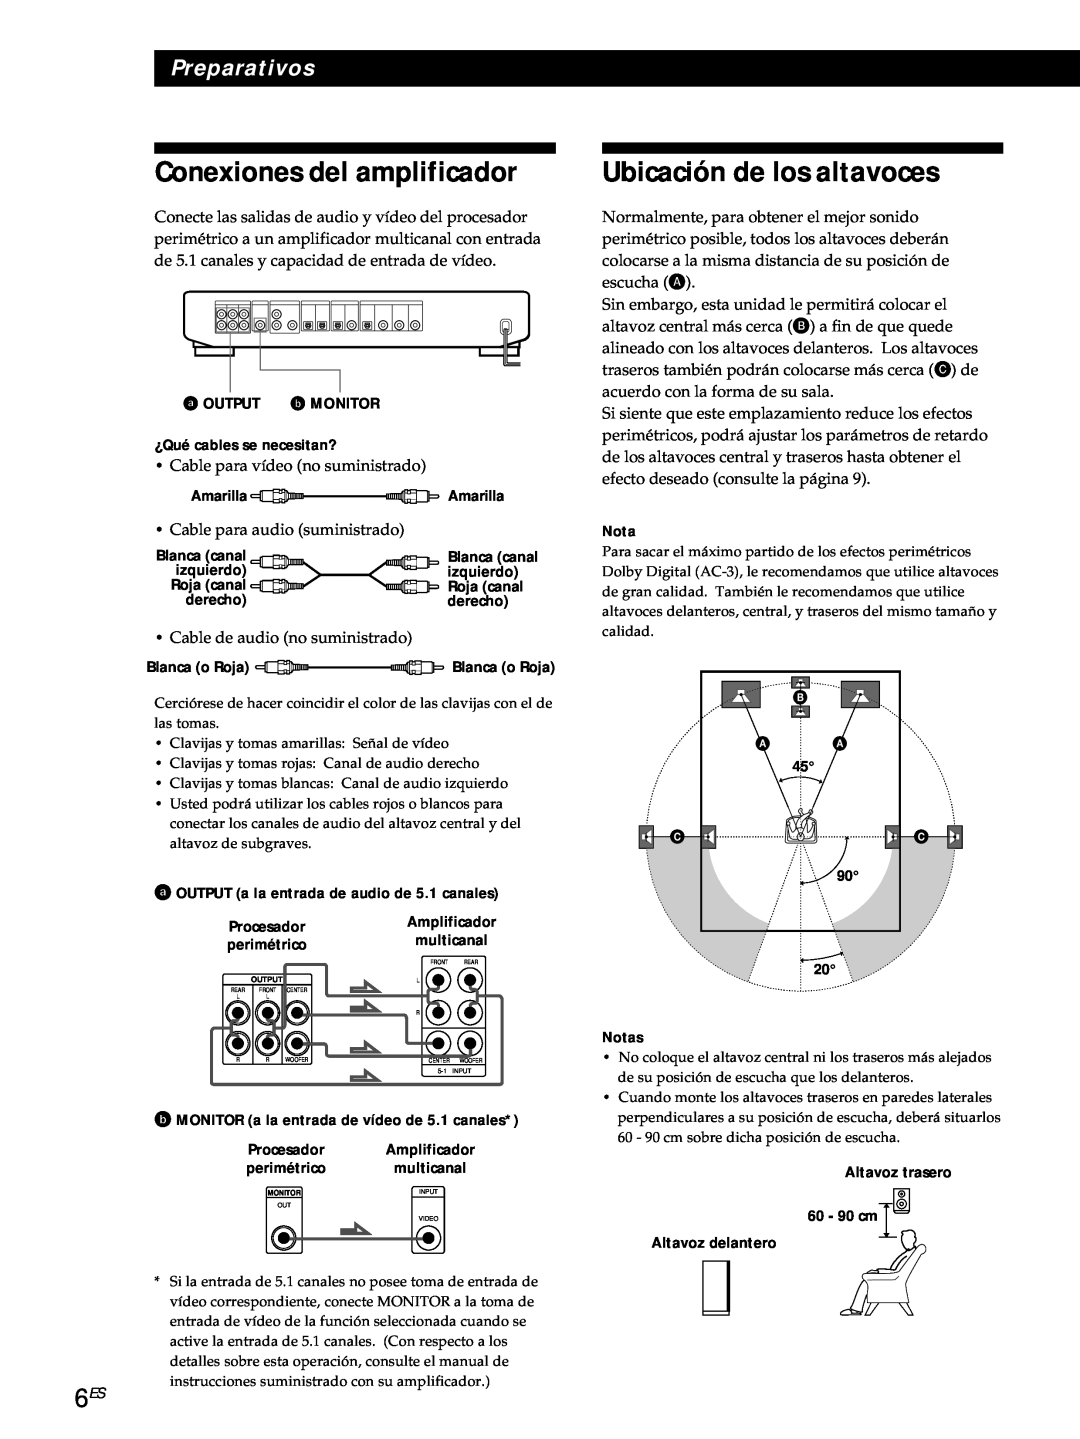 Sony SDP-E800 Conexiones del amplificador, Ubicación de los altavoces, Preparativos, ¿Qué cables se necesitan?, Nota 